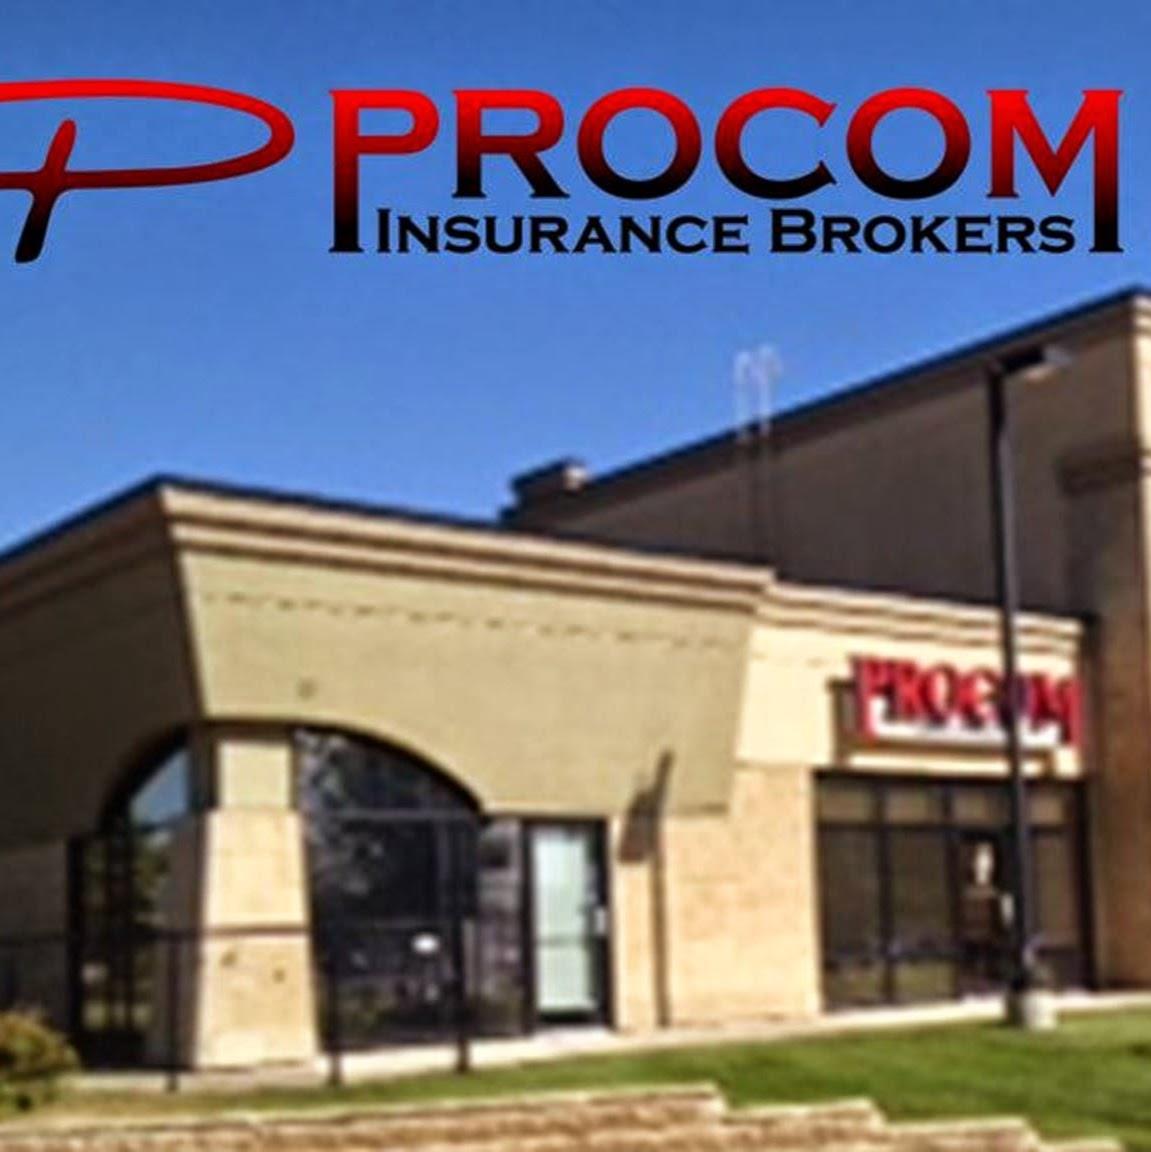 Insurance Brokers in Red Deer, AB